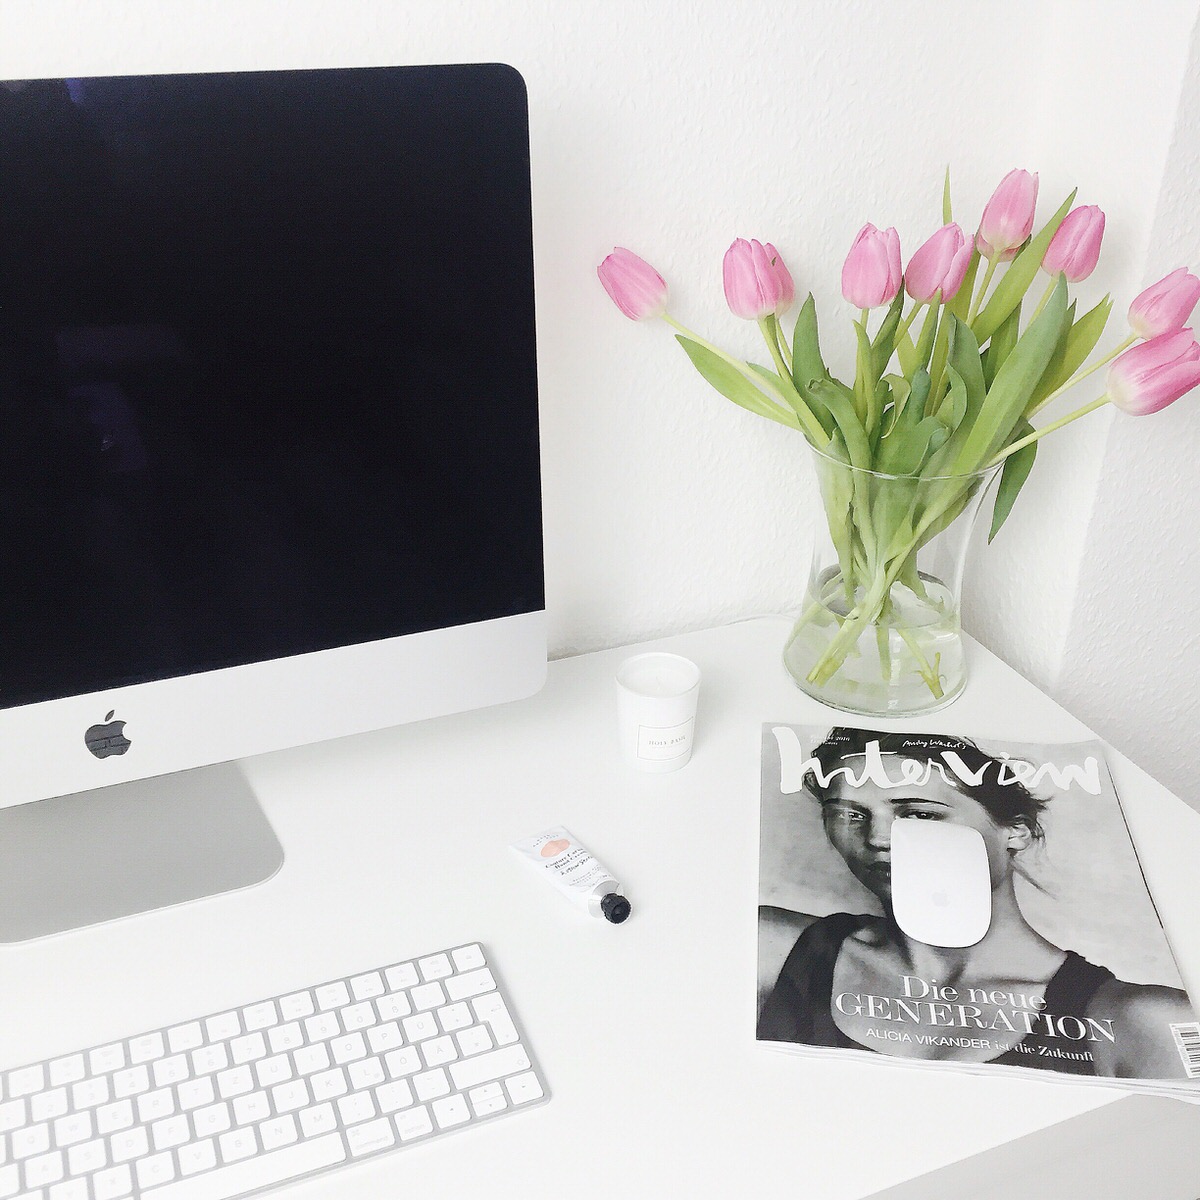 Blogger Arbeitsplatz, Schreibtisch, workplace, IKEA, Eames Style Stuhl, iMac, Apple